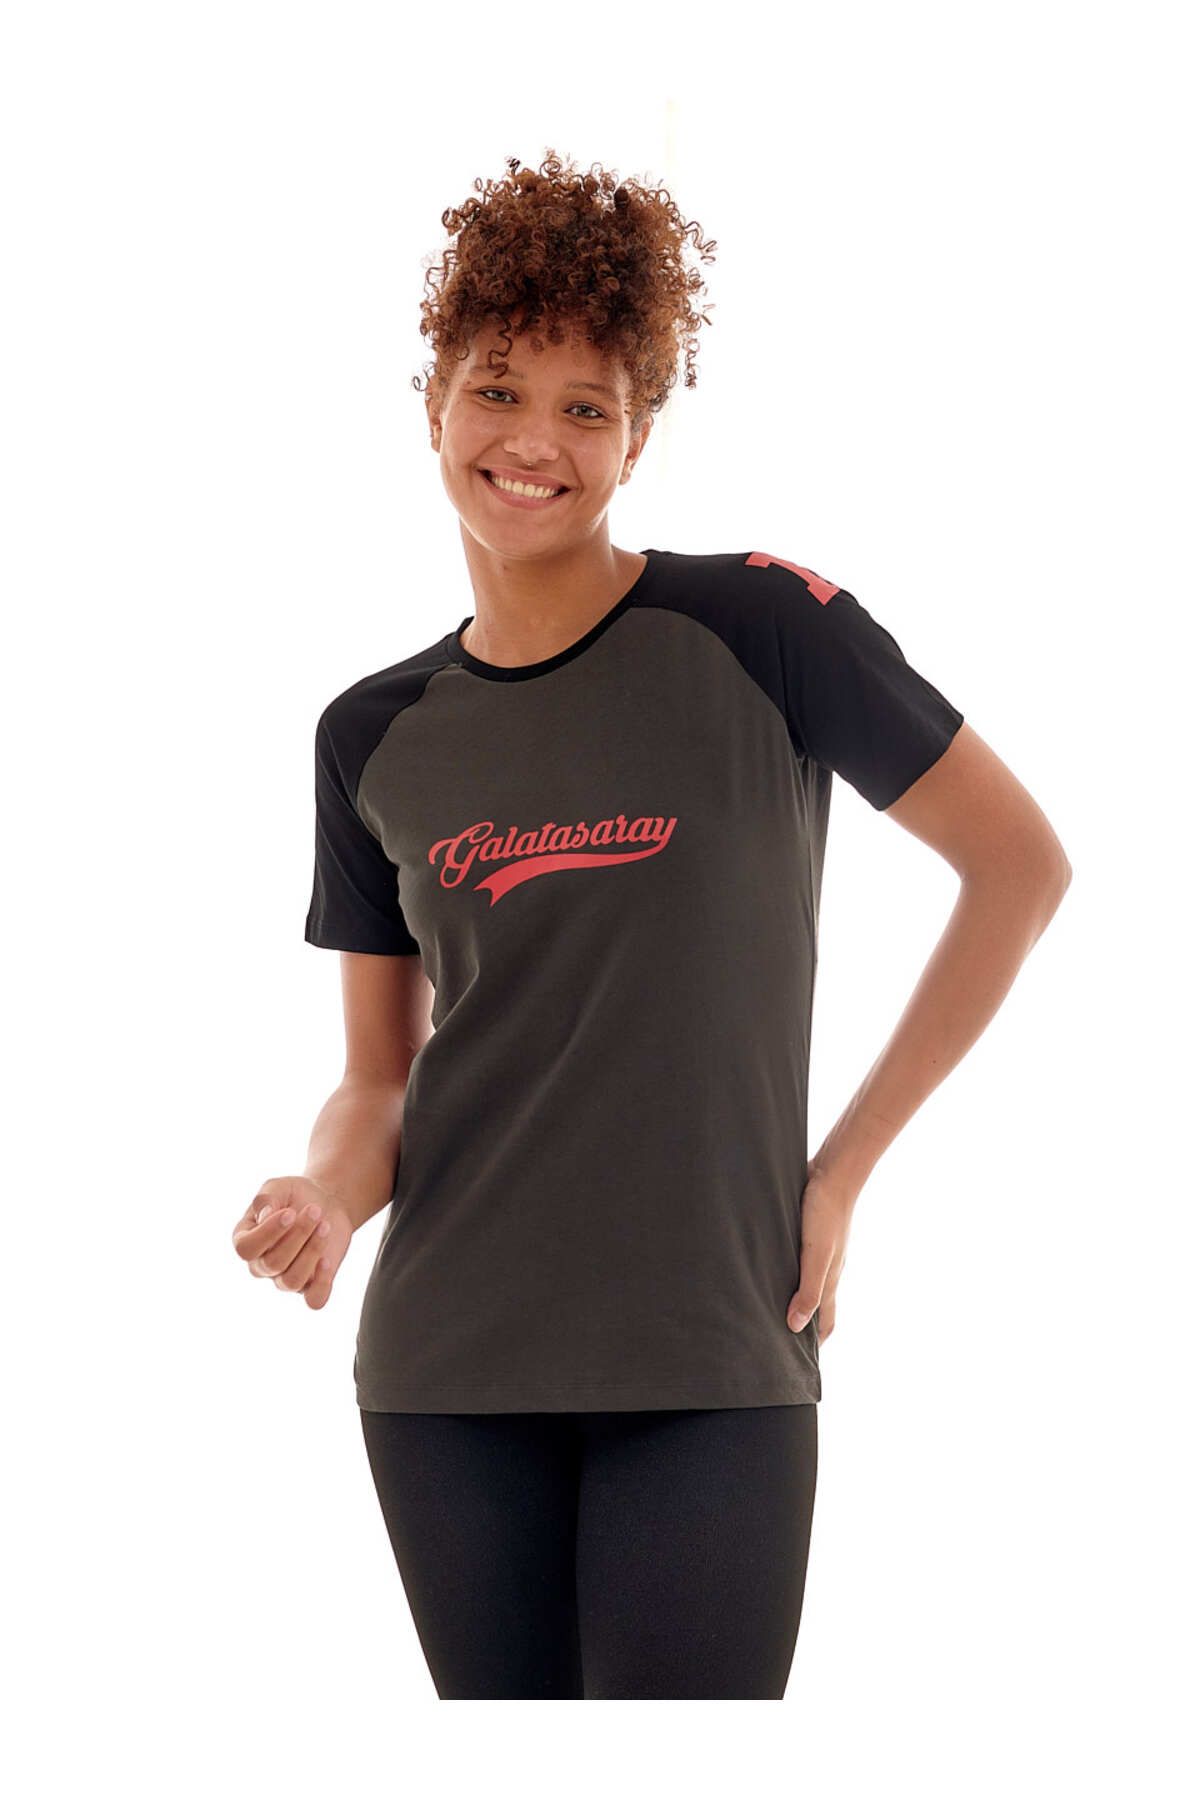 Galatasaray Galatasaray Kadın T-Shirt K231194-304